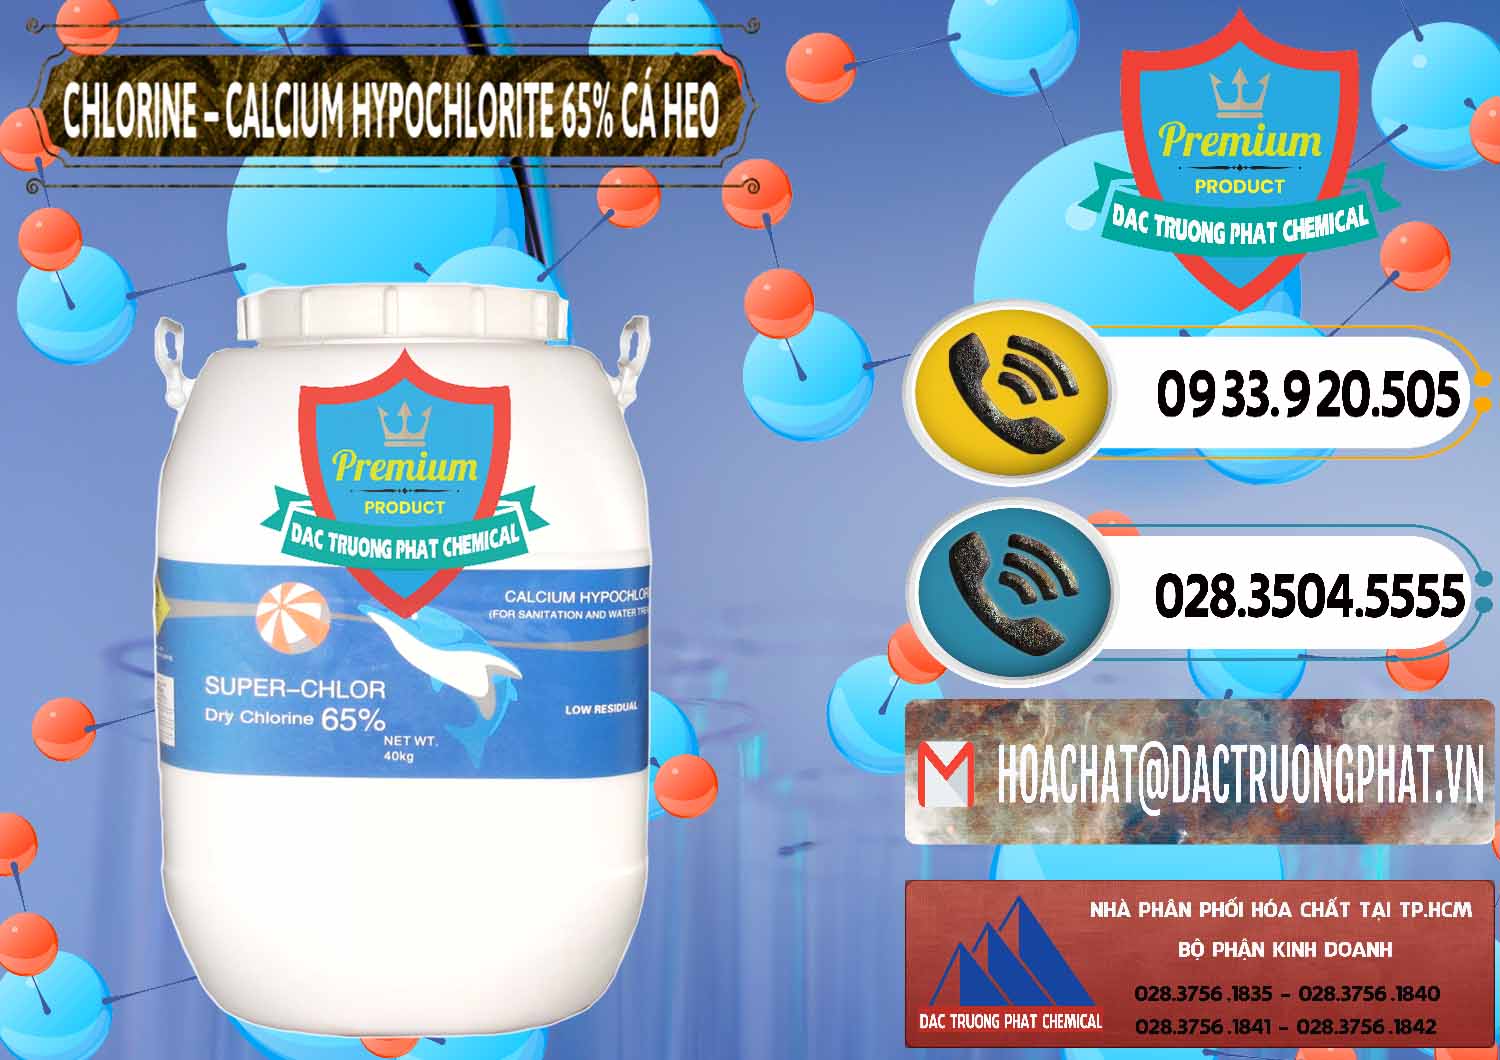 Cty chuyên cung ứng và bán Clorin - Chlorine Cá Heo 65% Trung Quốc China - 0053 - Nhà phân phối ( kinh doanh ) hóa chất tại TP.HCM - hoachatdetnhuom.vn